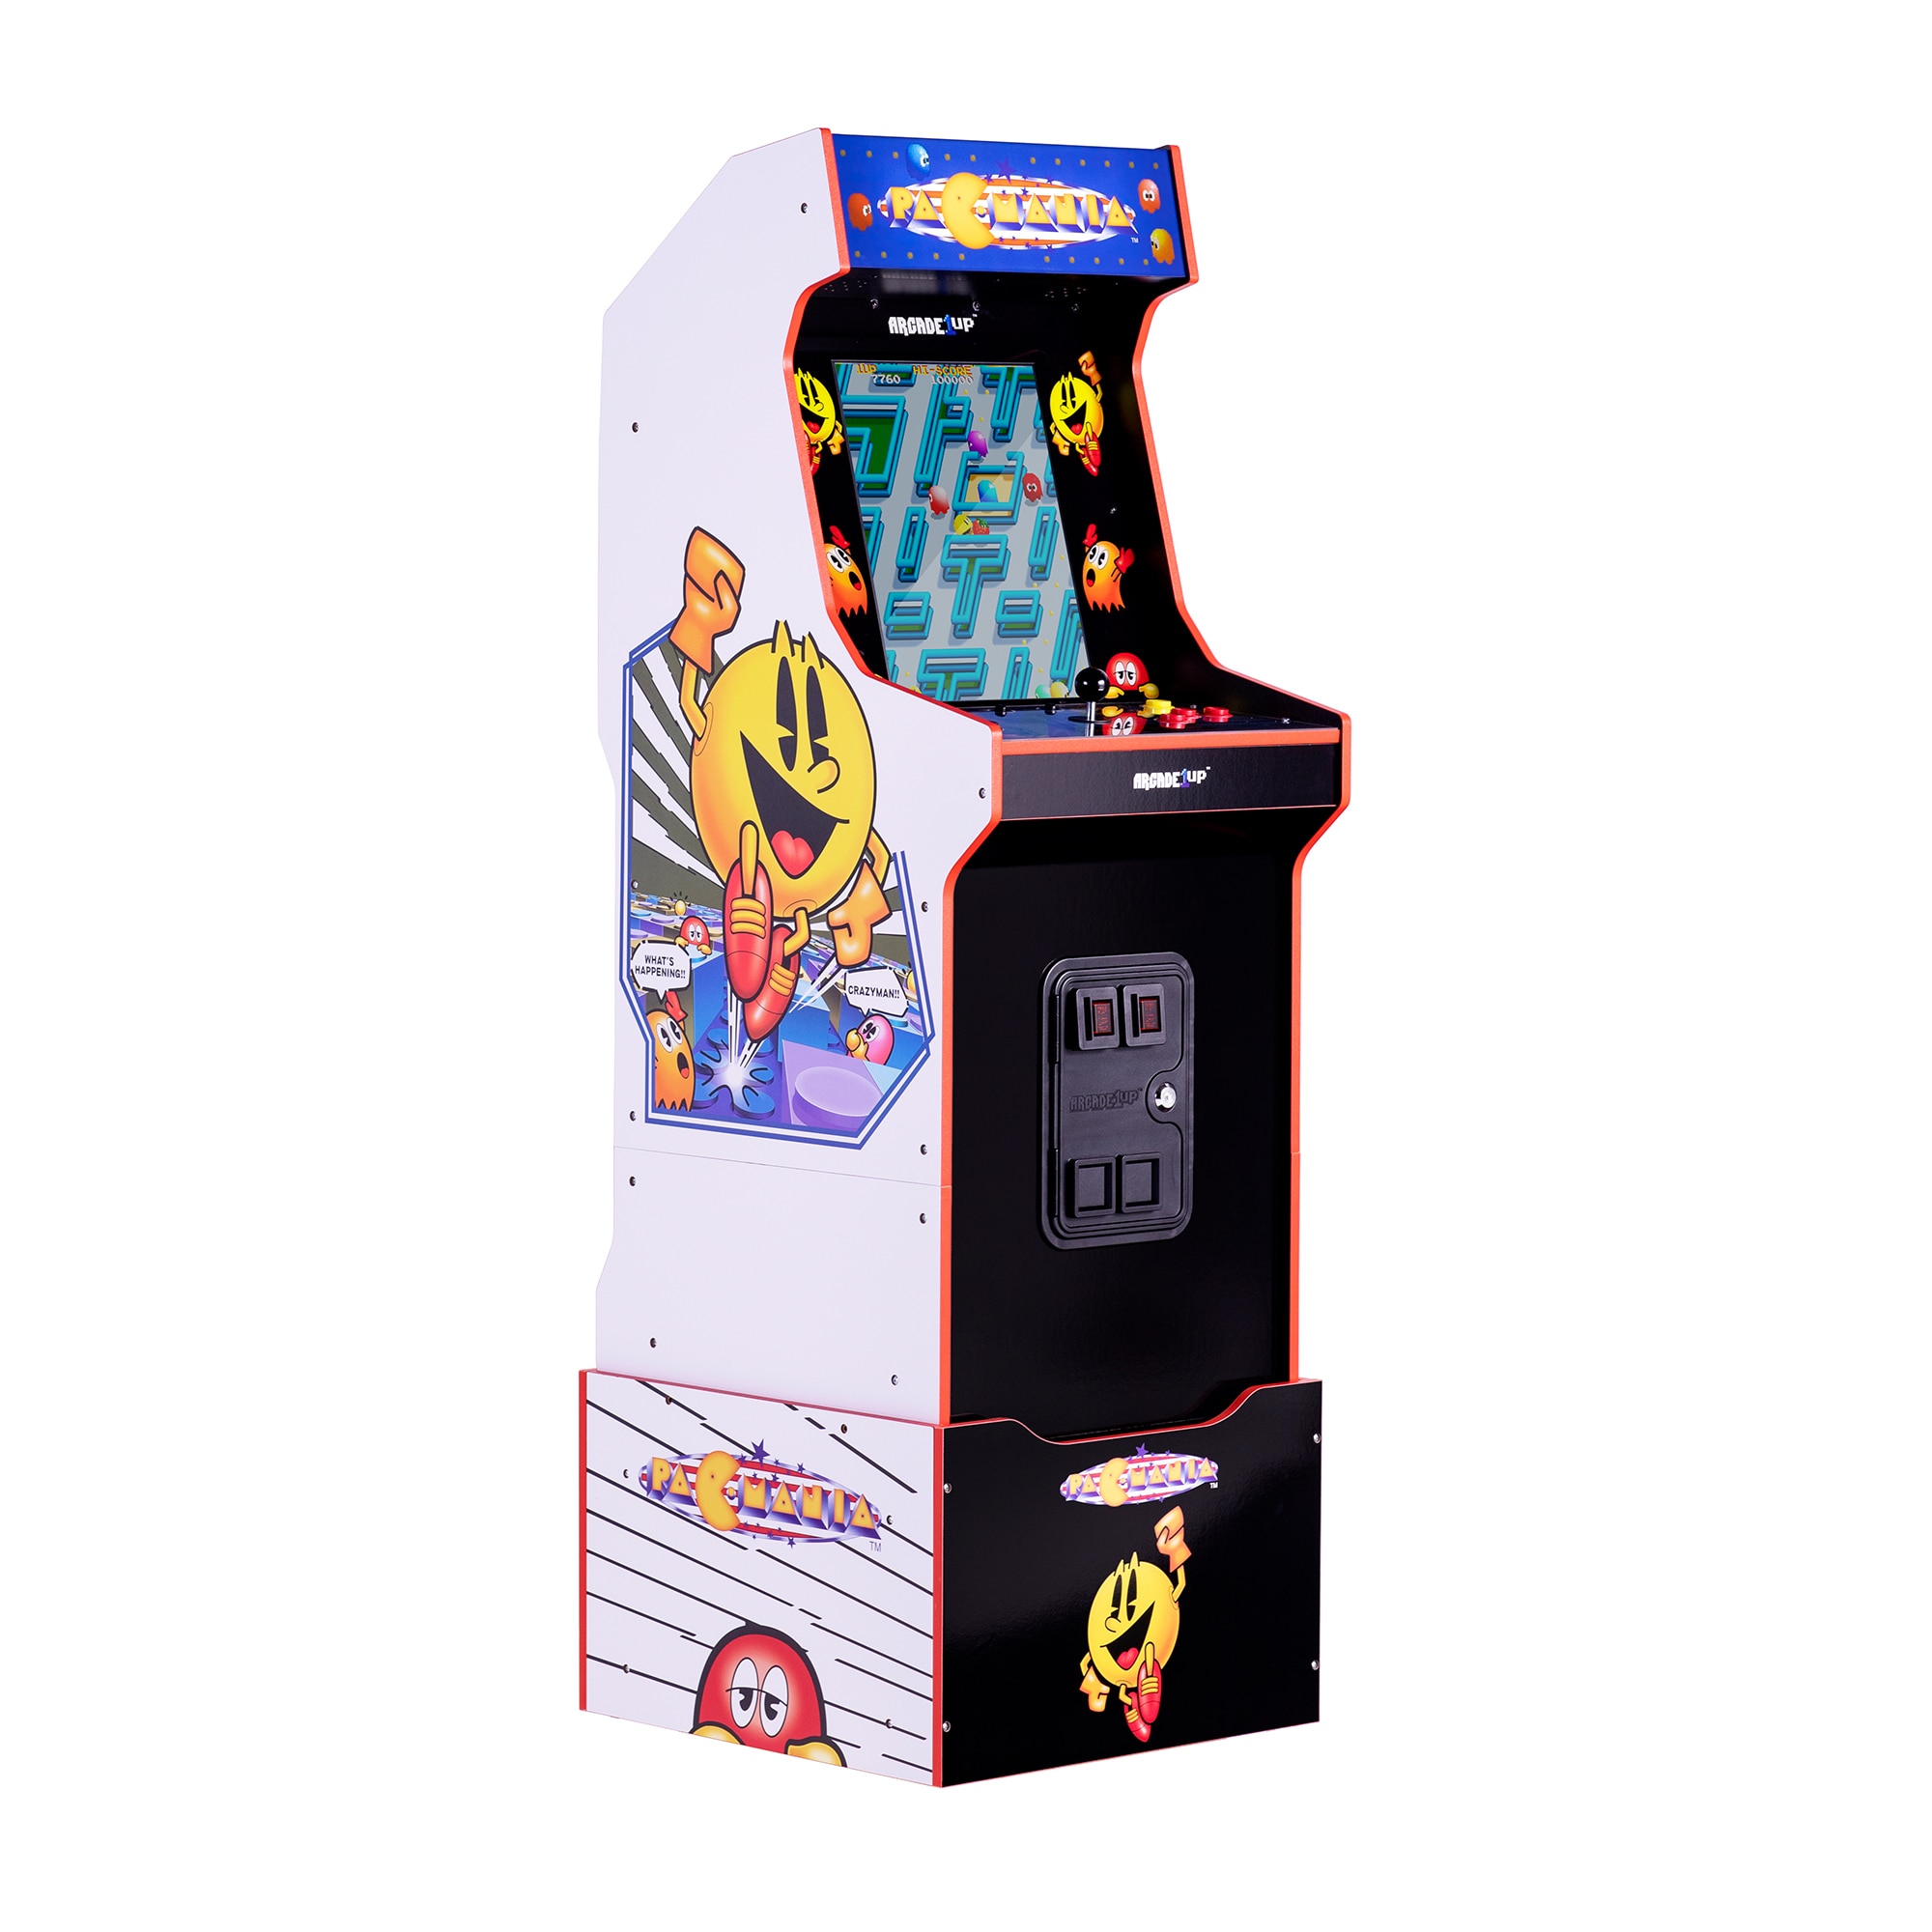 Arcade 1up Arcade1Up Legacy Edition Multi Metal Arcade Cabinet